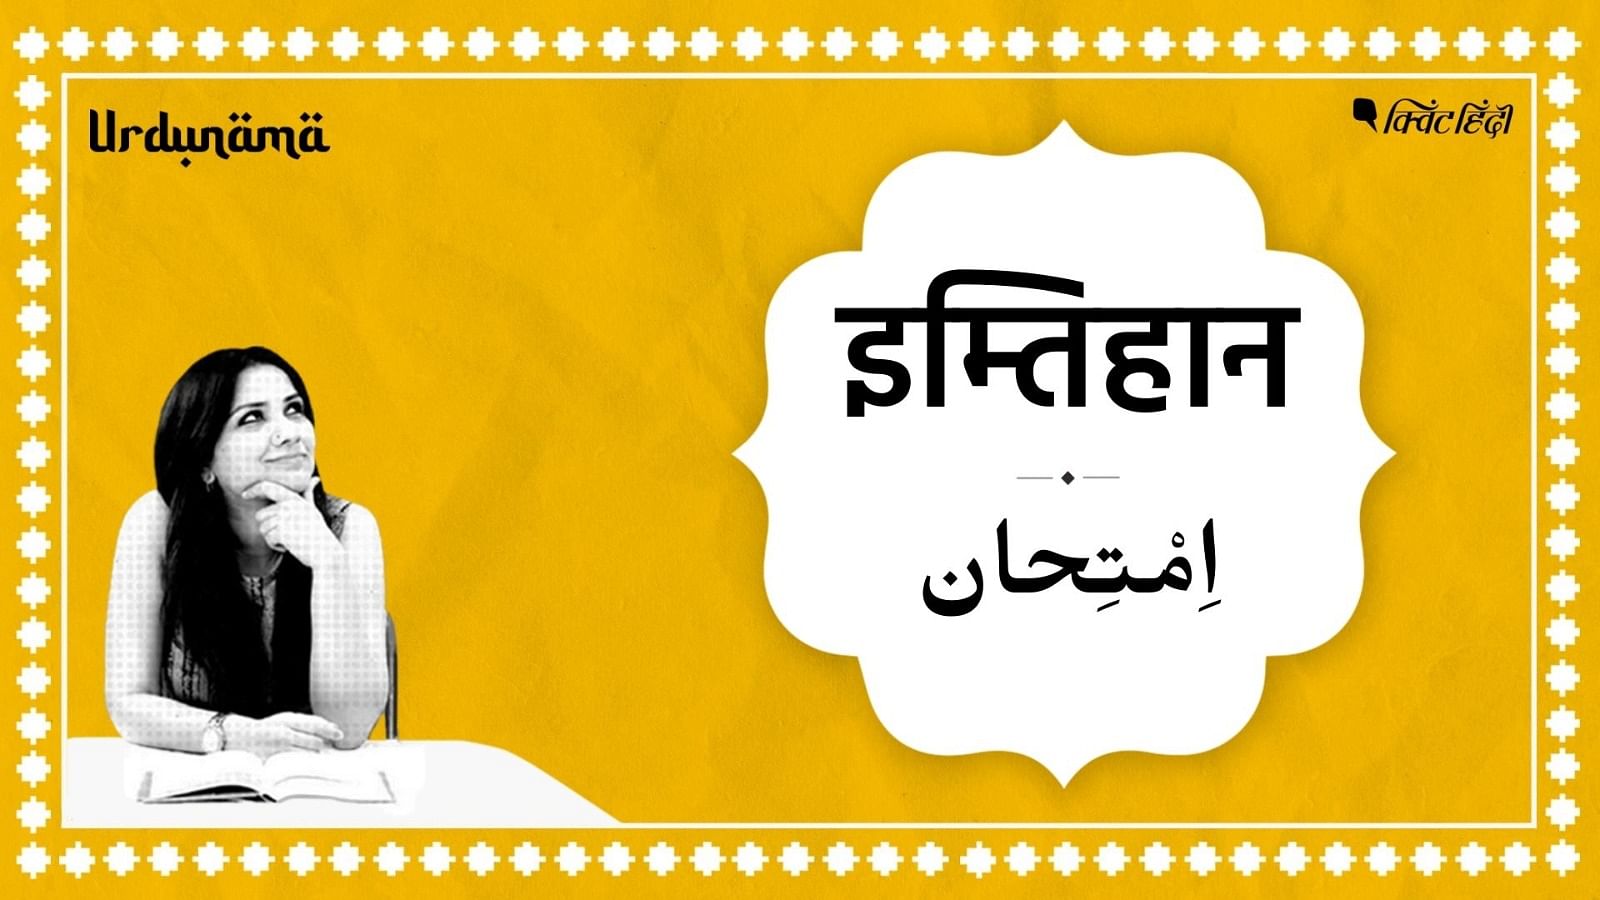 <div class="paragraphs"><p>Urdunama | जिंदगी के 'इम्तिहान' की तैयारी के लिए उर्दू शायरी से सबक लीजिए </p></div>